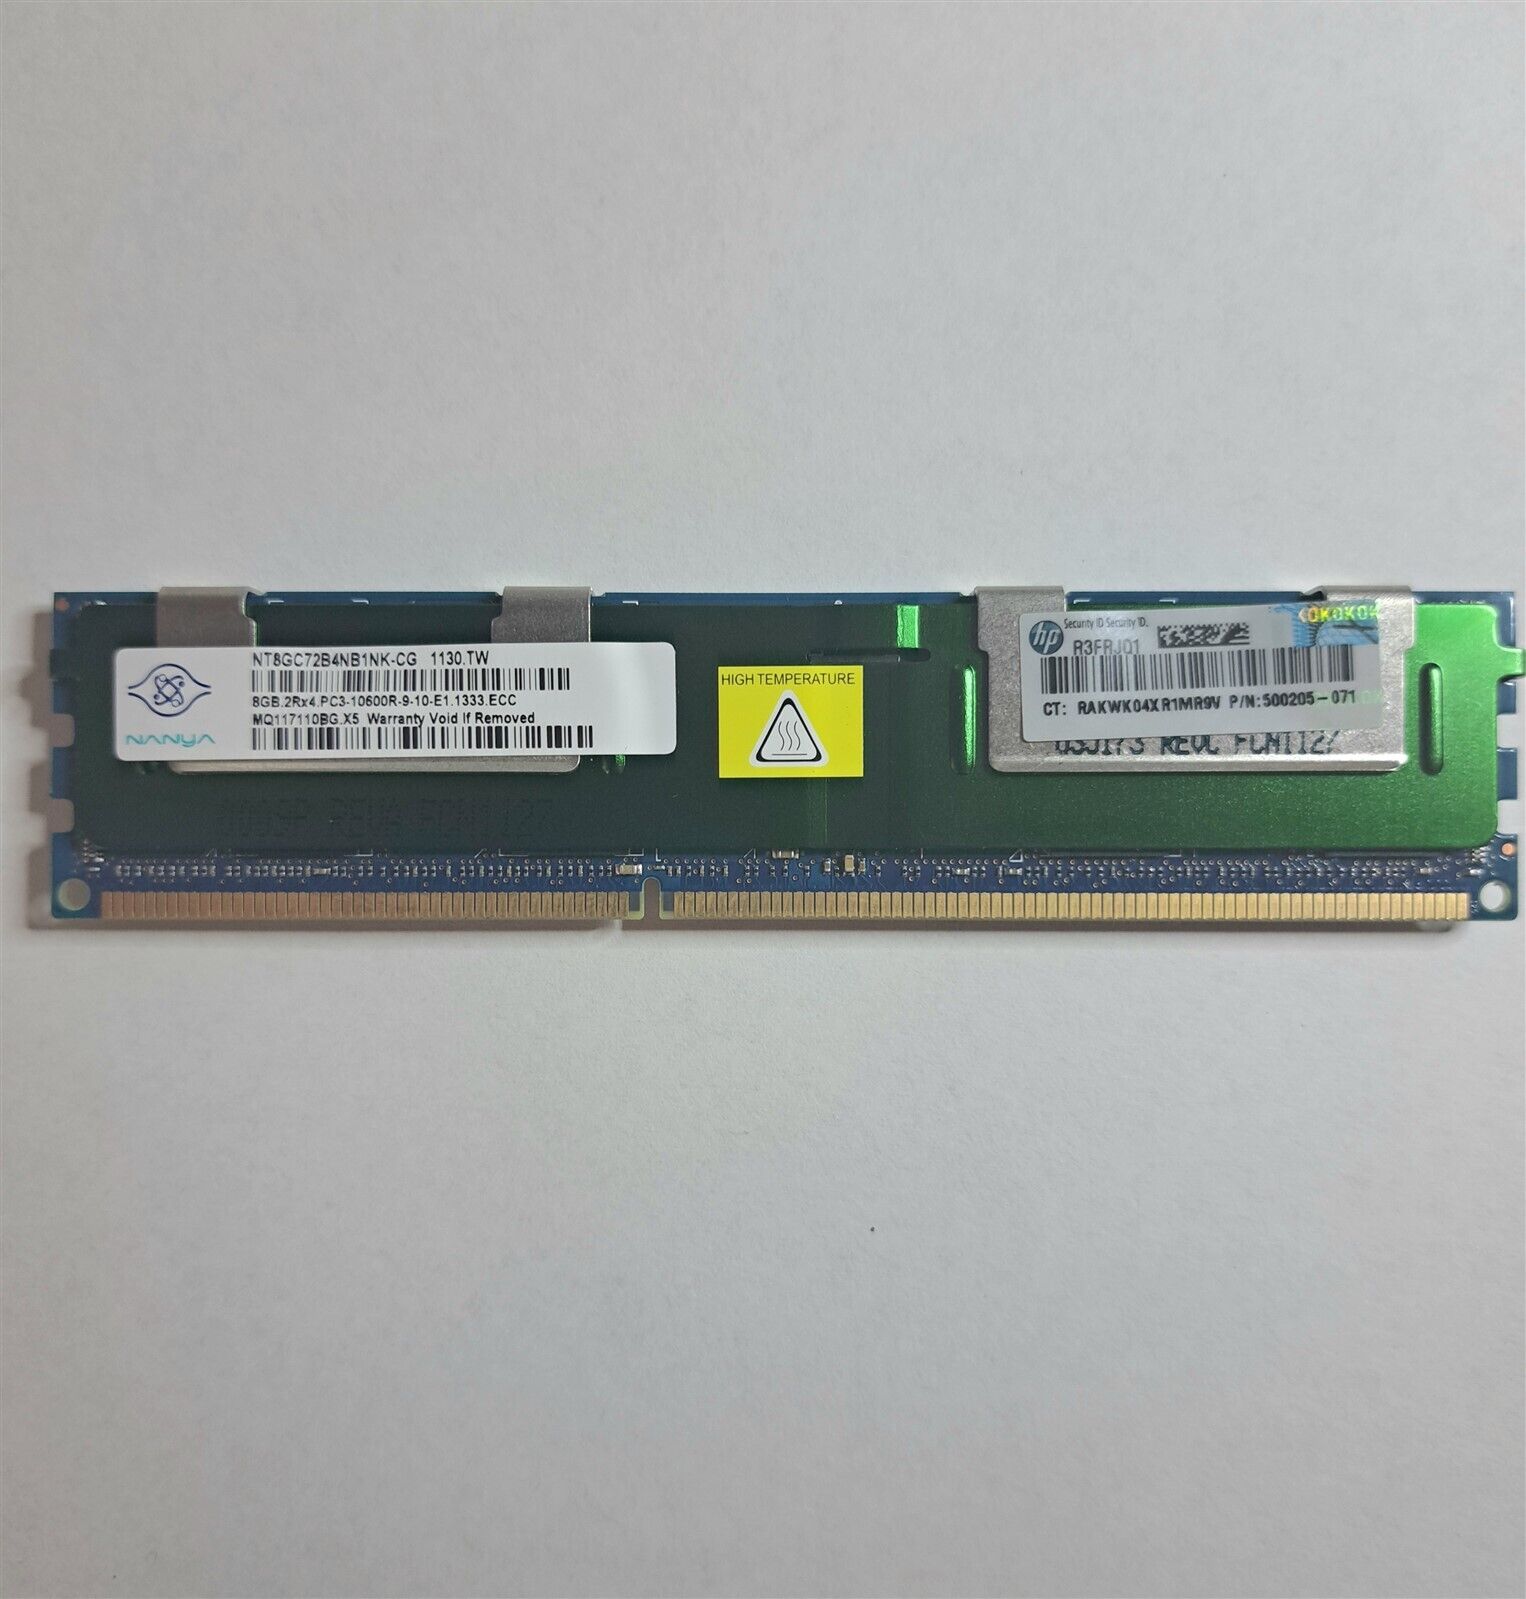 Lot of 25 x Nanya 8GB PC3-10600R Registered ECC Memory P/N 500205-071